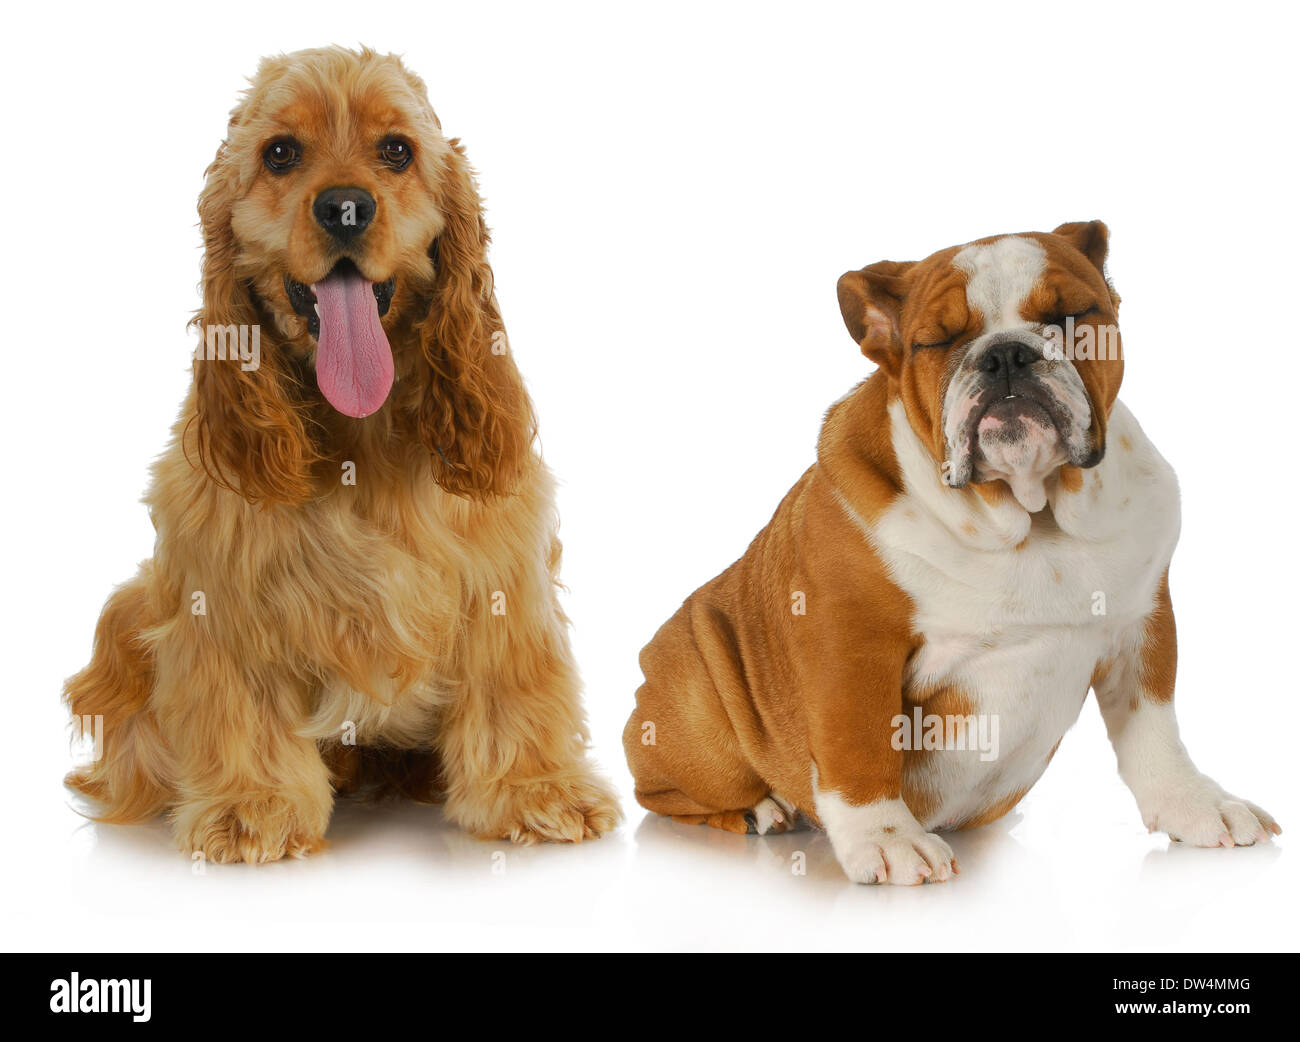 Deux chiens - Cocker américain et bulldog Anglais assis à côté de l'autre sur fond blanc Banque D'Images